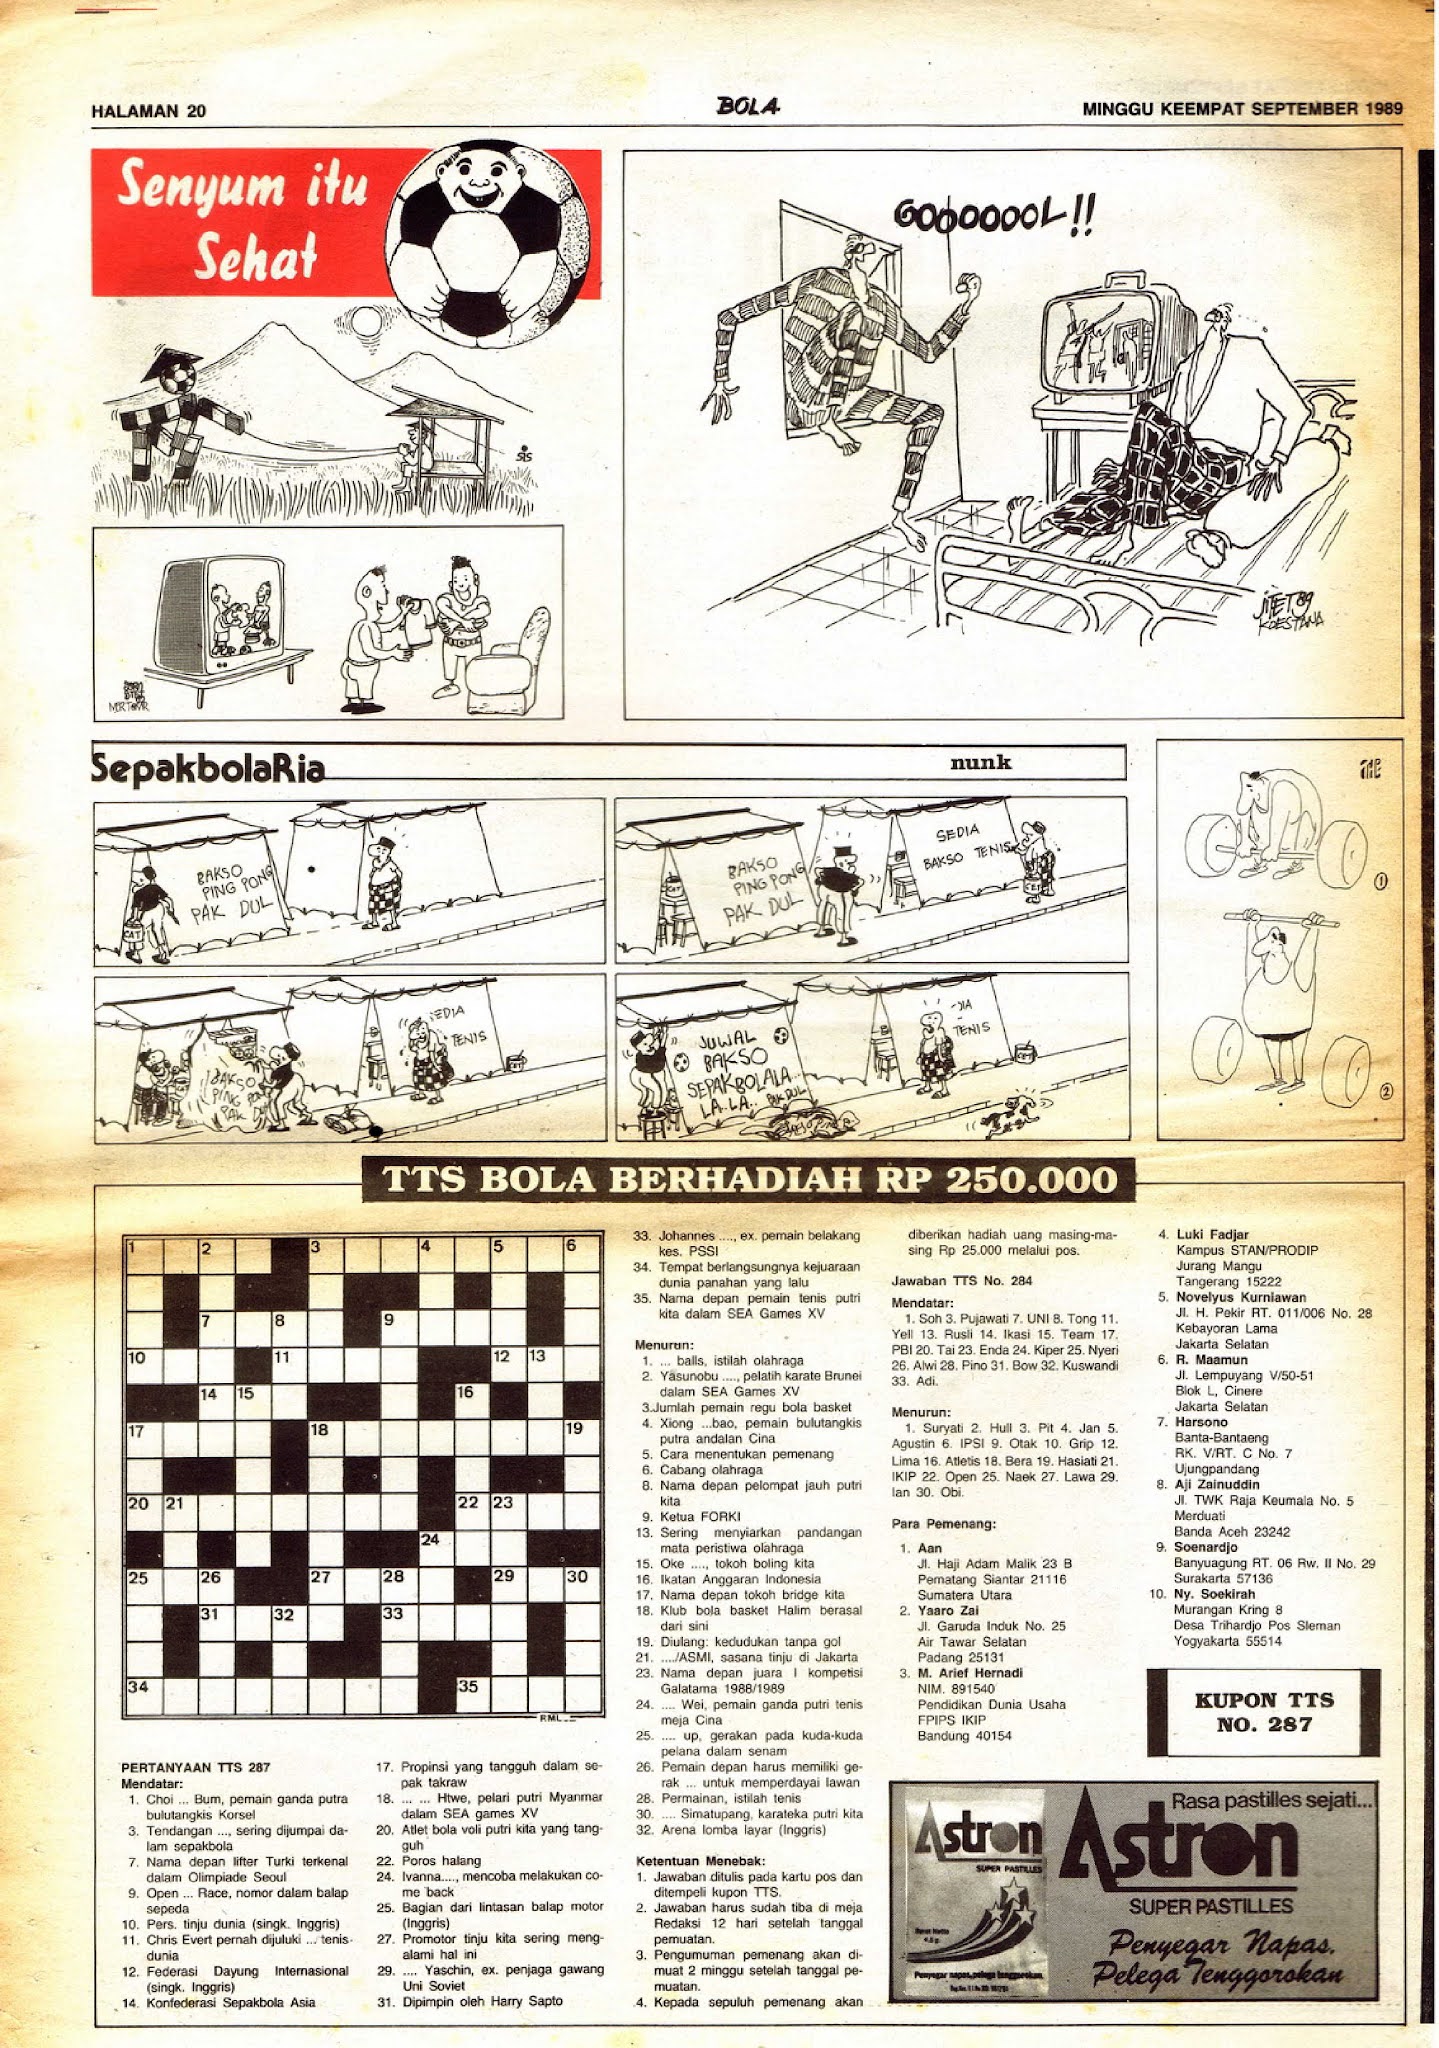 BOLA Portuguese Newspaper #6534 edition 11 March 1989